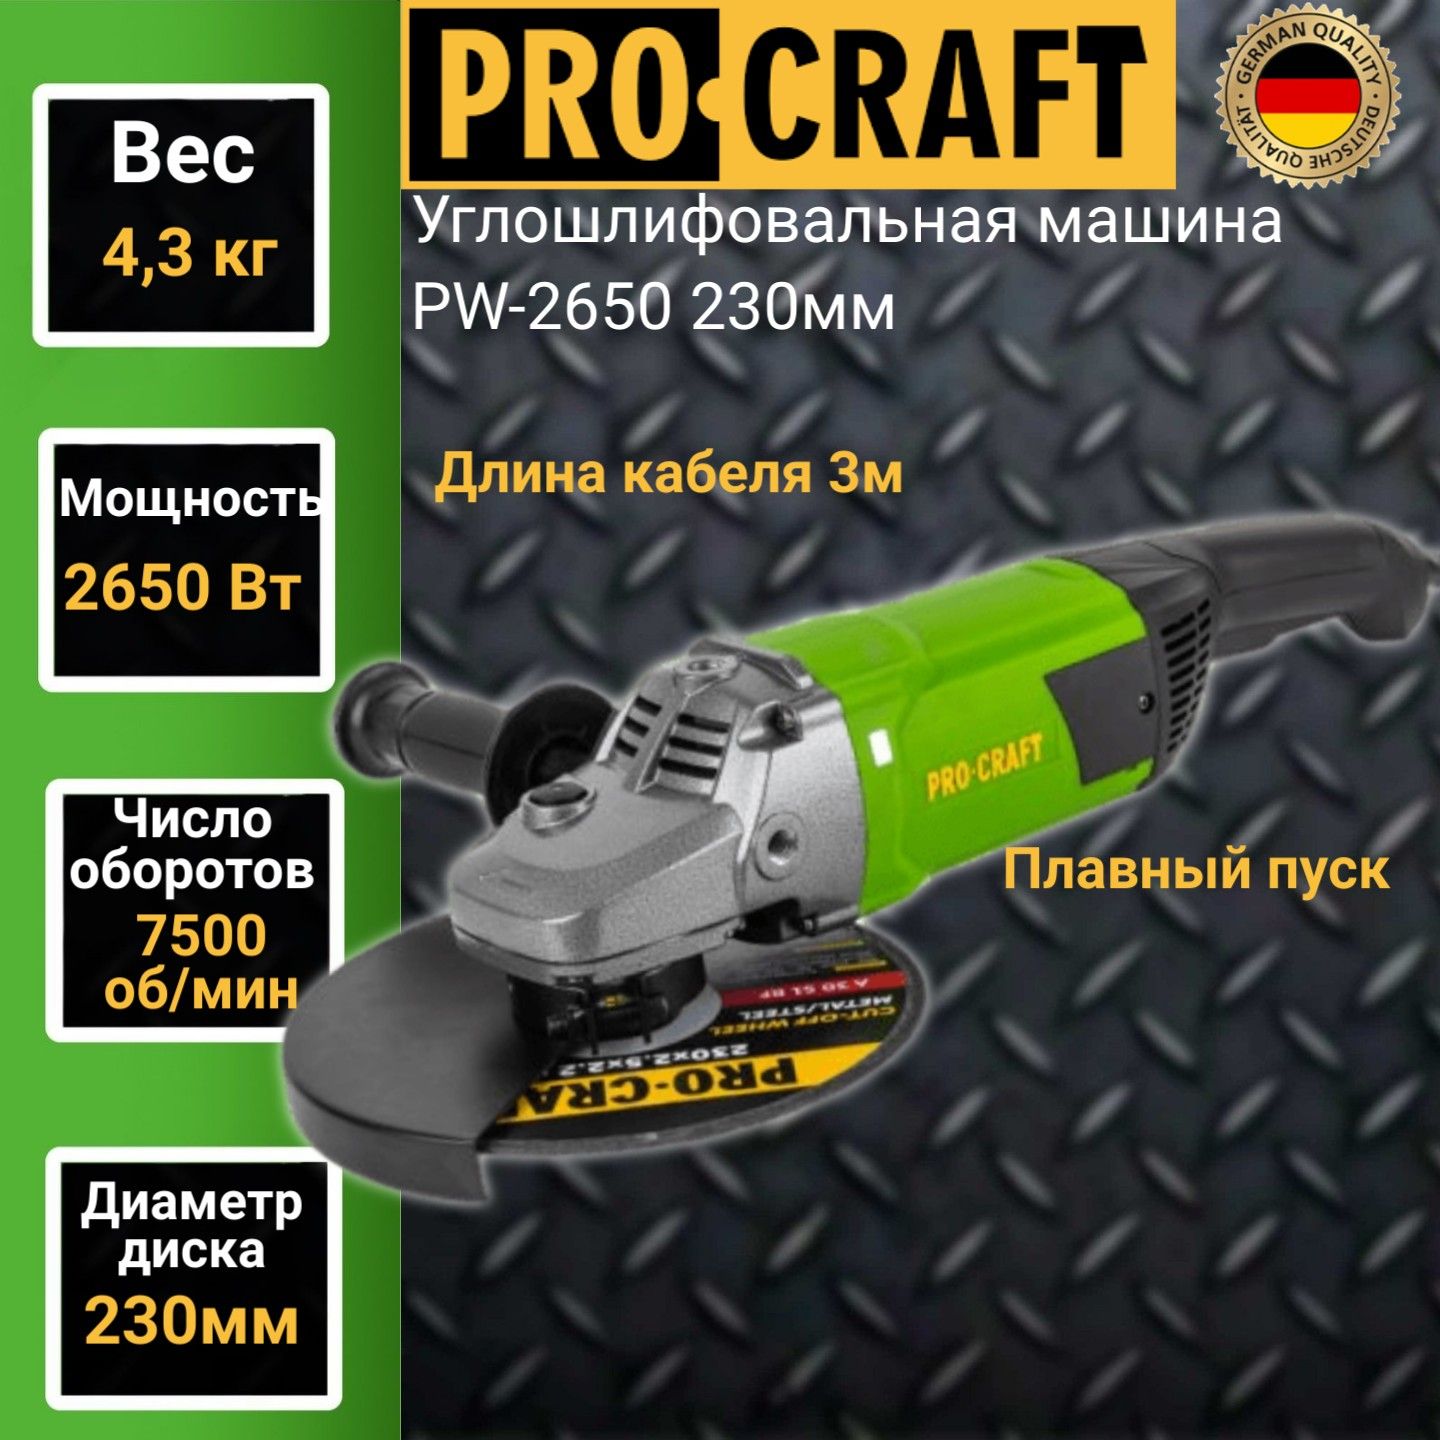 Углошлифовальная машина болгарка Procraft PW 2650, 230мм круг, 2650Вт, 7500об/мин машина радиоуправляемая batcar работает от батареек